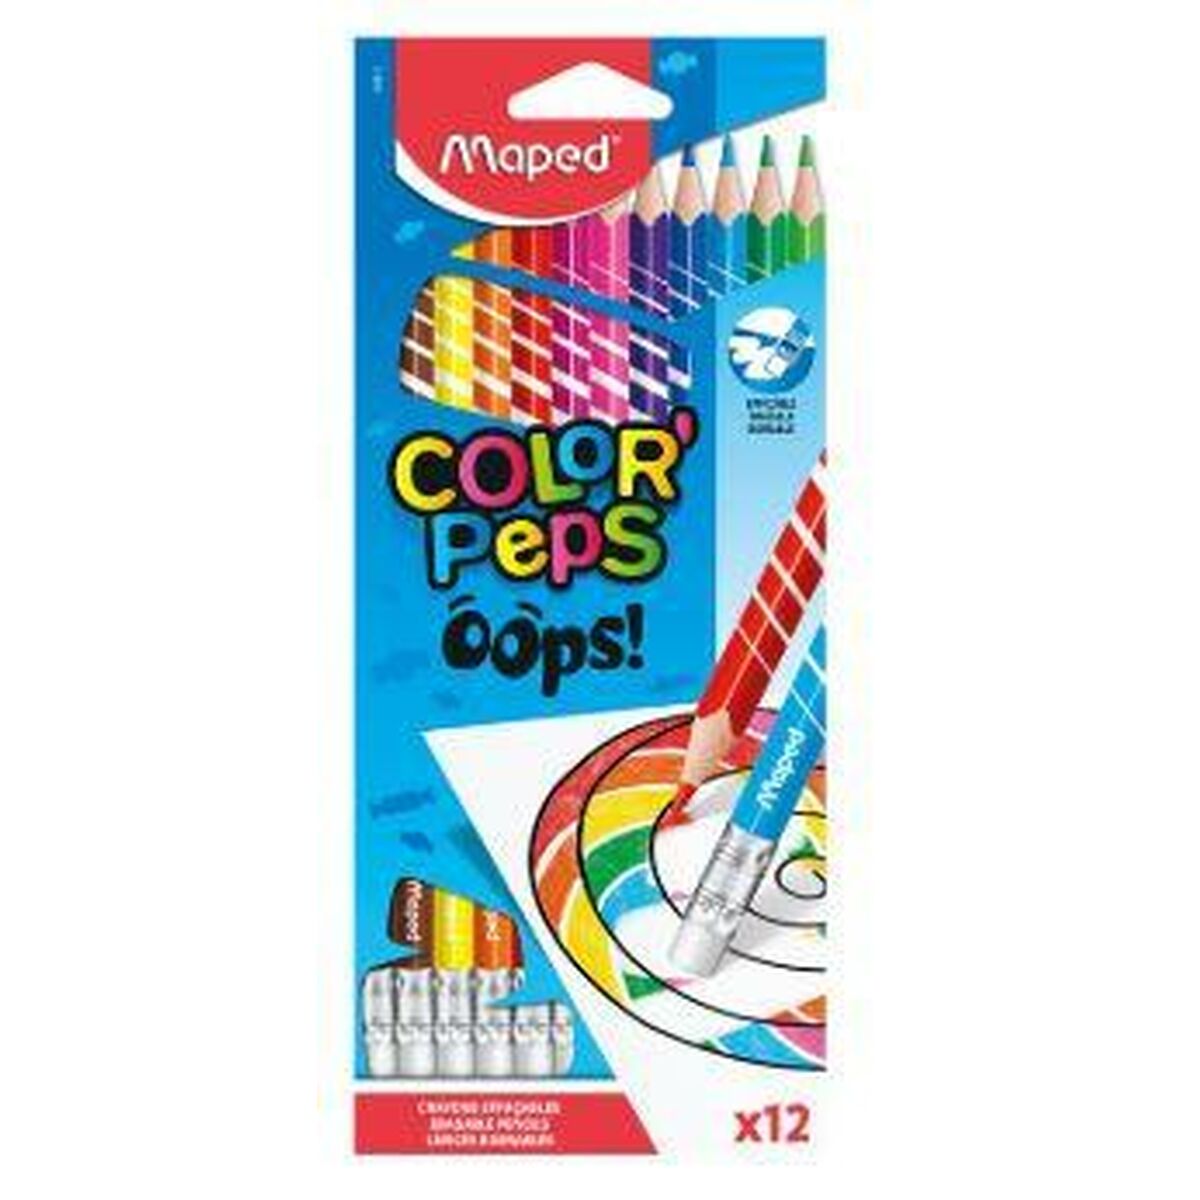 Färgpennor Maped Color' Peps Multicolour 12 Delar (12 antal)-Kontor och Kontorsmaterial, konst och hantverk-Maped-peaceofhome.se